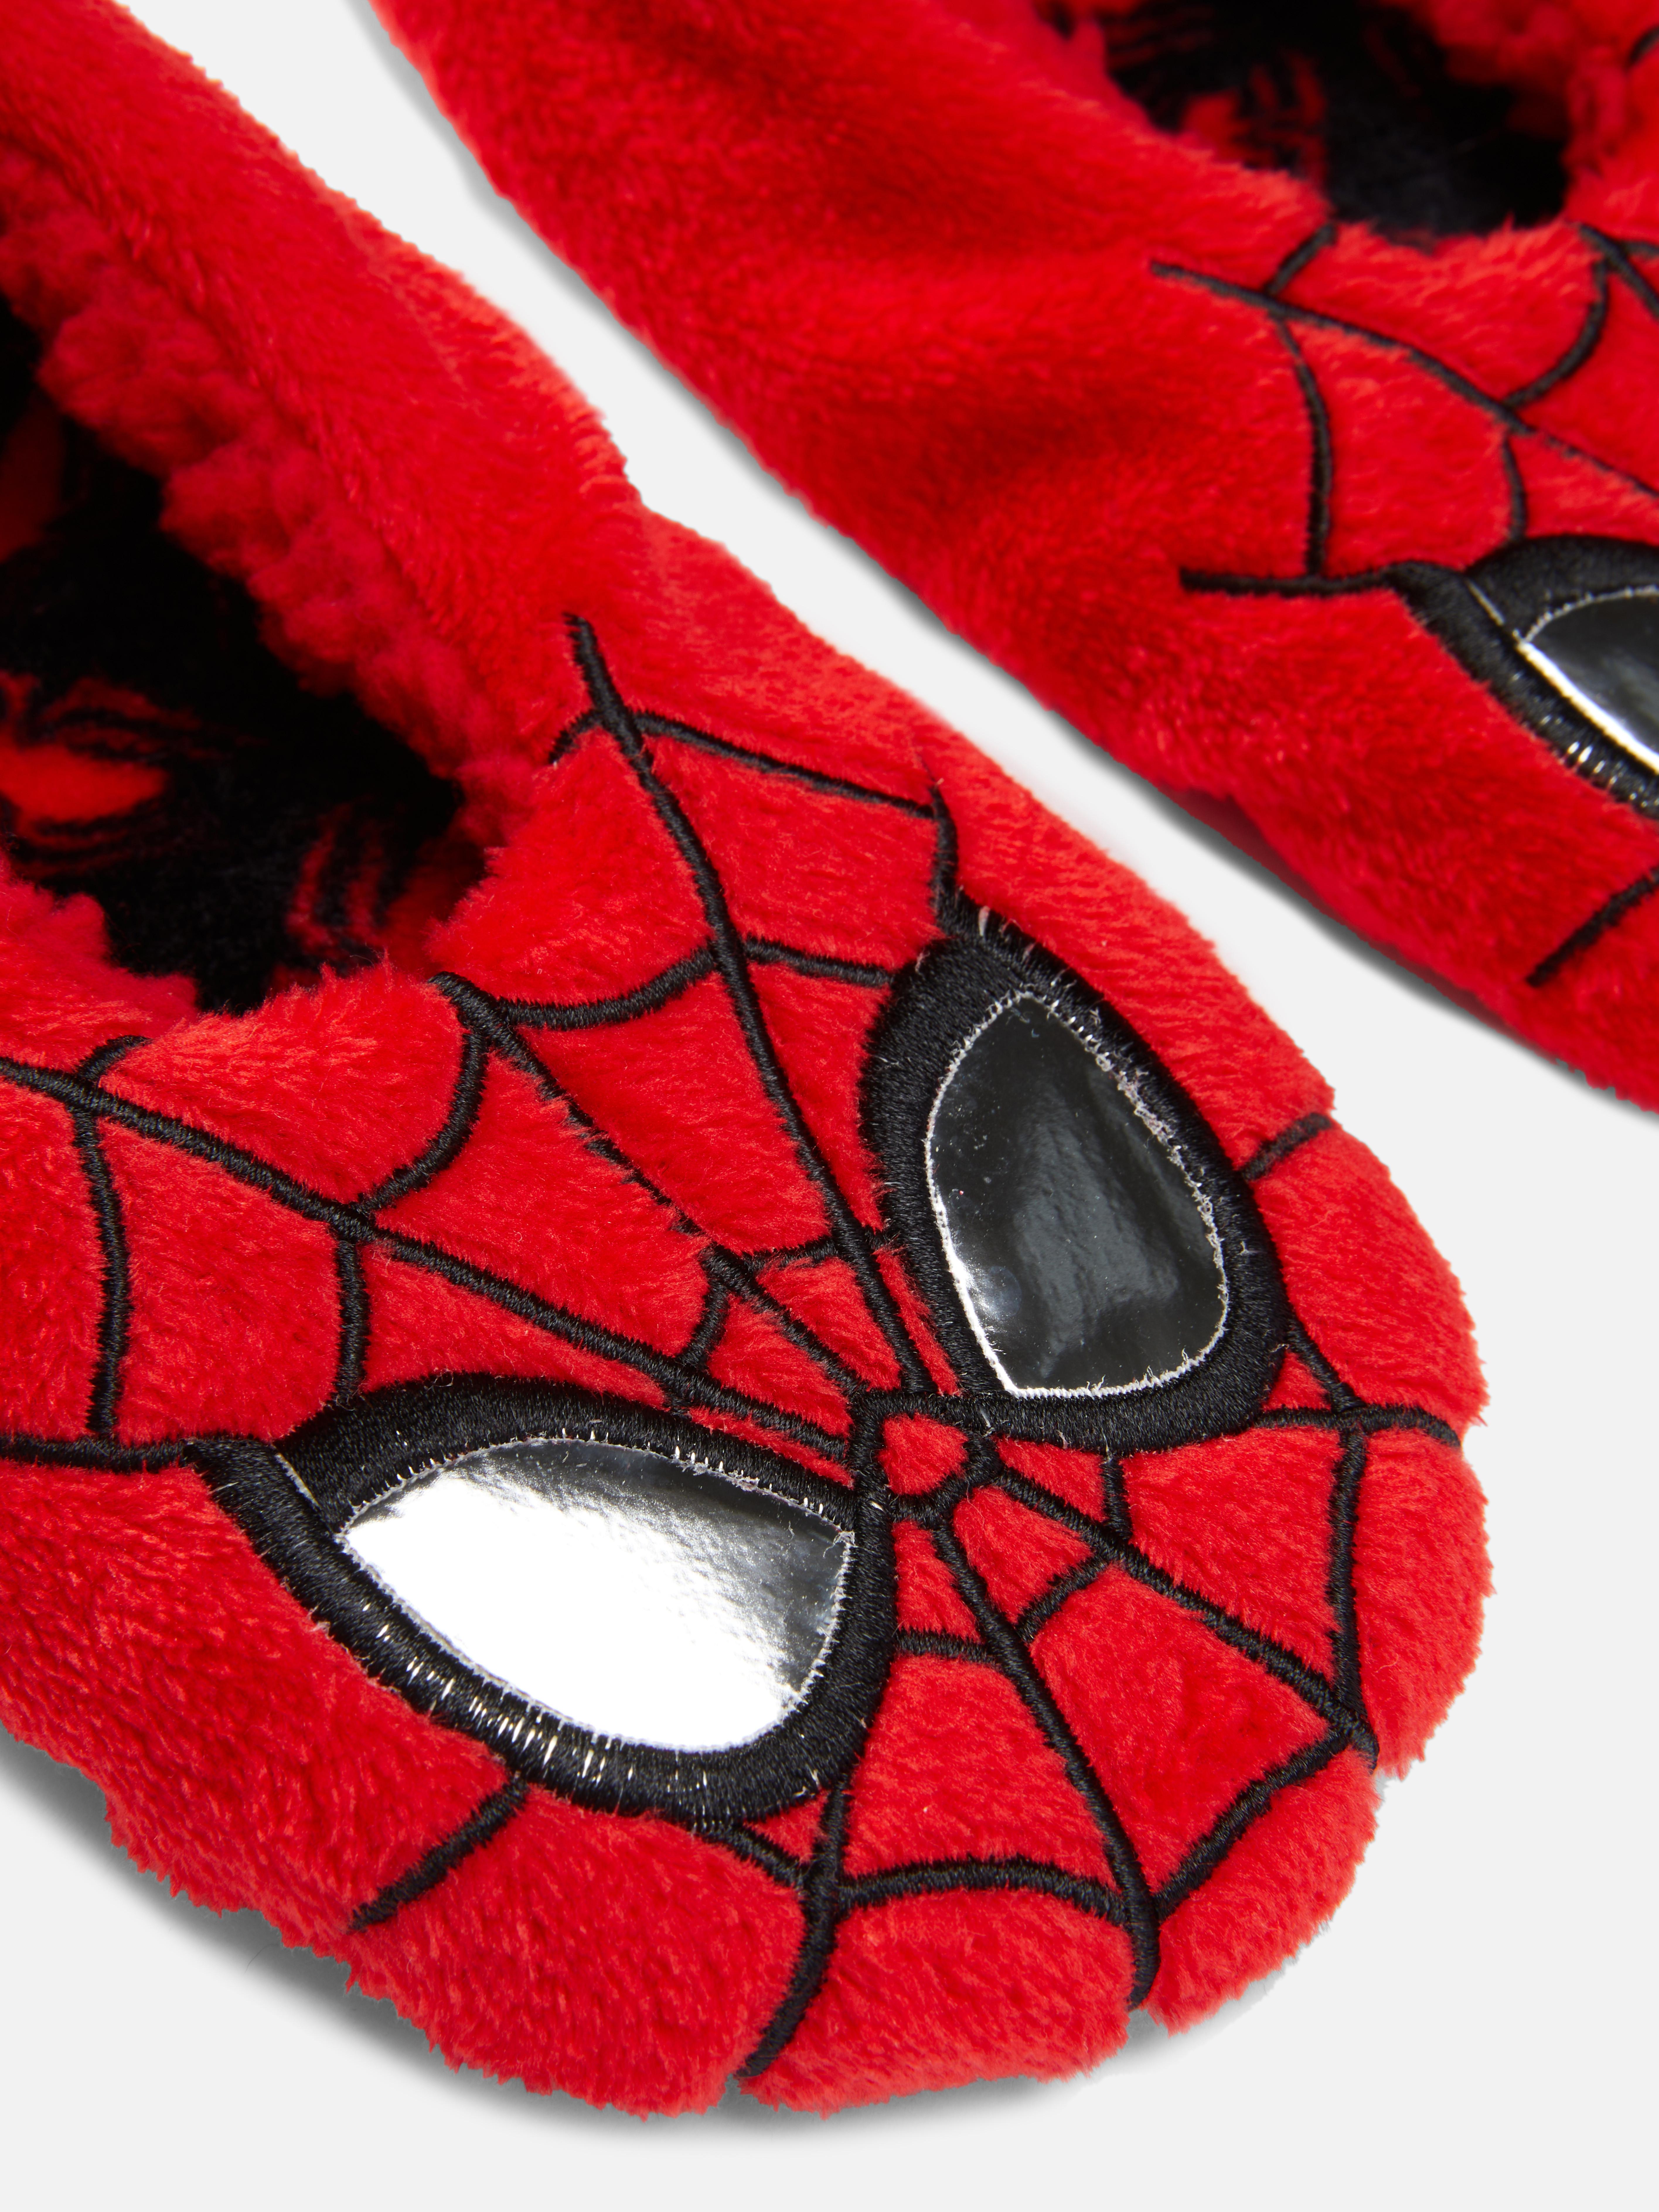 Marvel Spider-Man Slippers